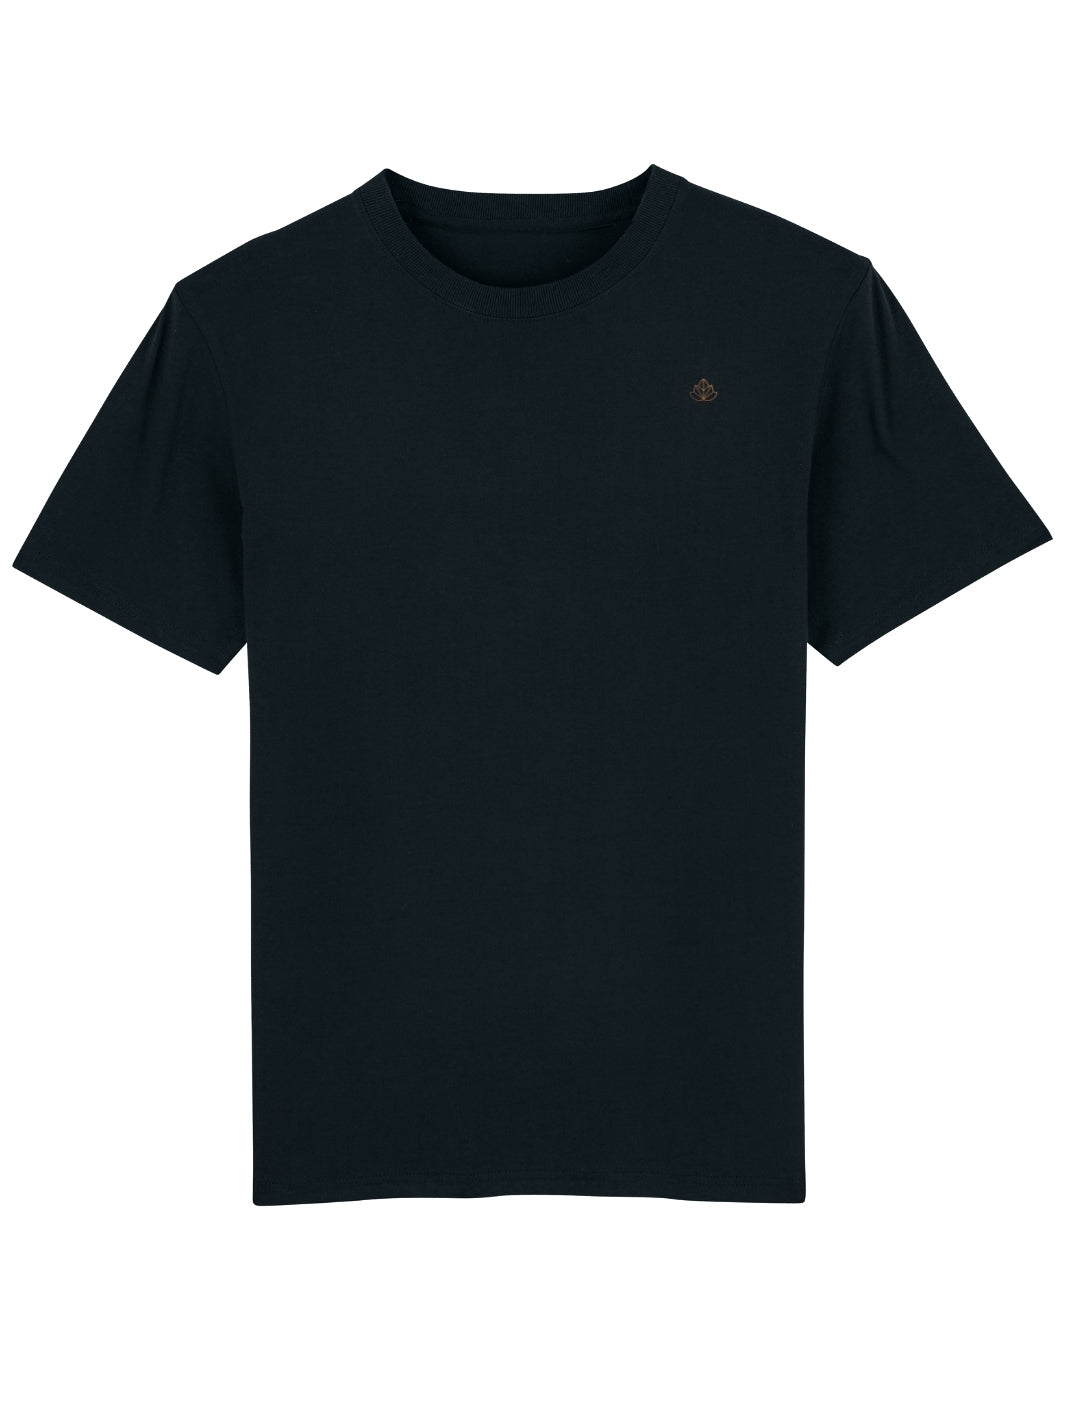 Royal pánské tričko z biobavlny vysoká gramáž černé produkt